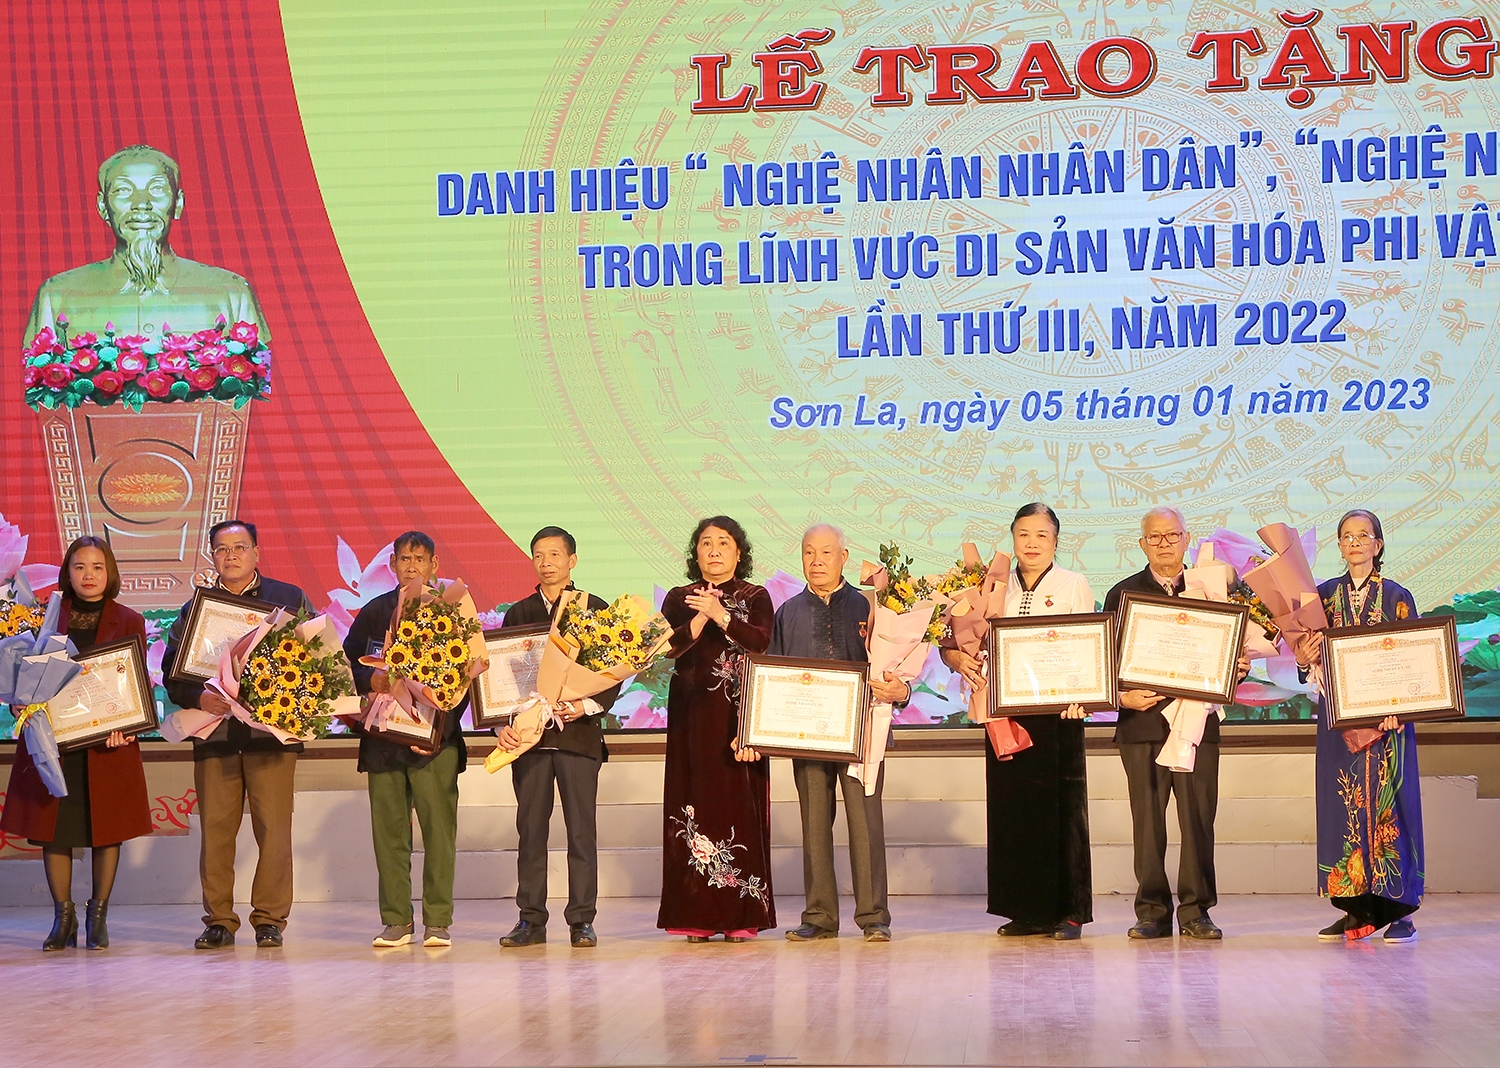 Lãnh đạo UBND tỉnh Sơn La chuyển trao danh hiệu vinh dự Nhà nước “Nghệ nhân Ưu tú” cho các cá nhân.